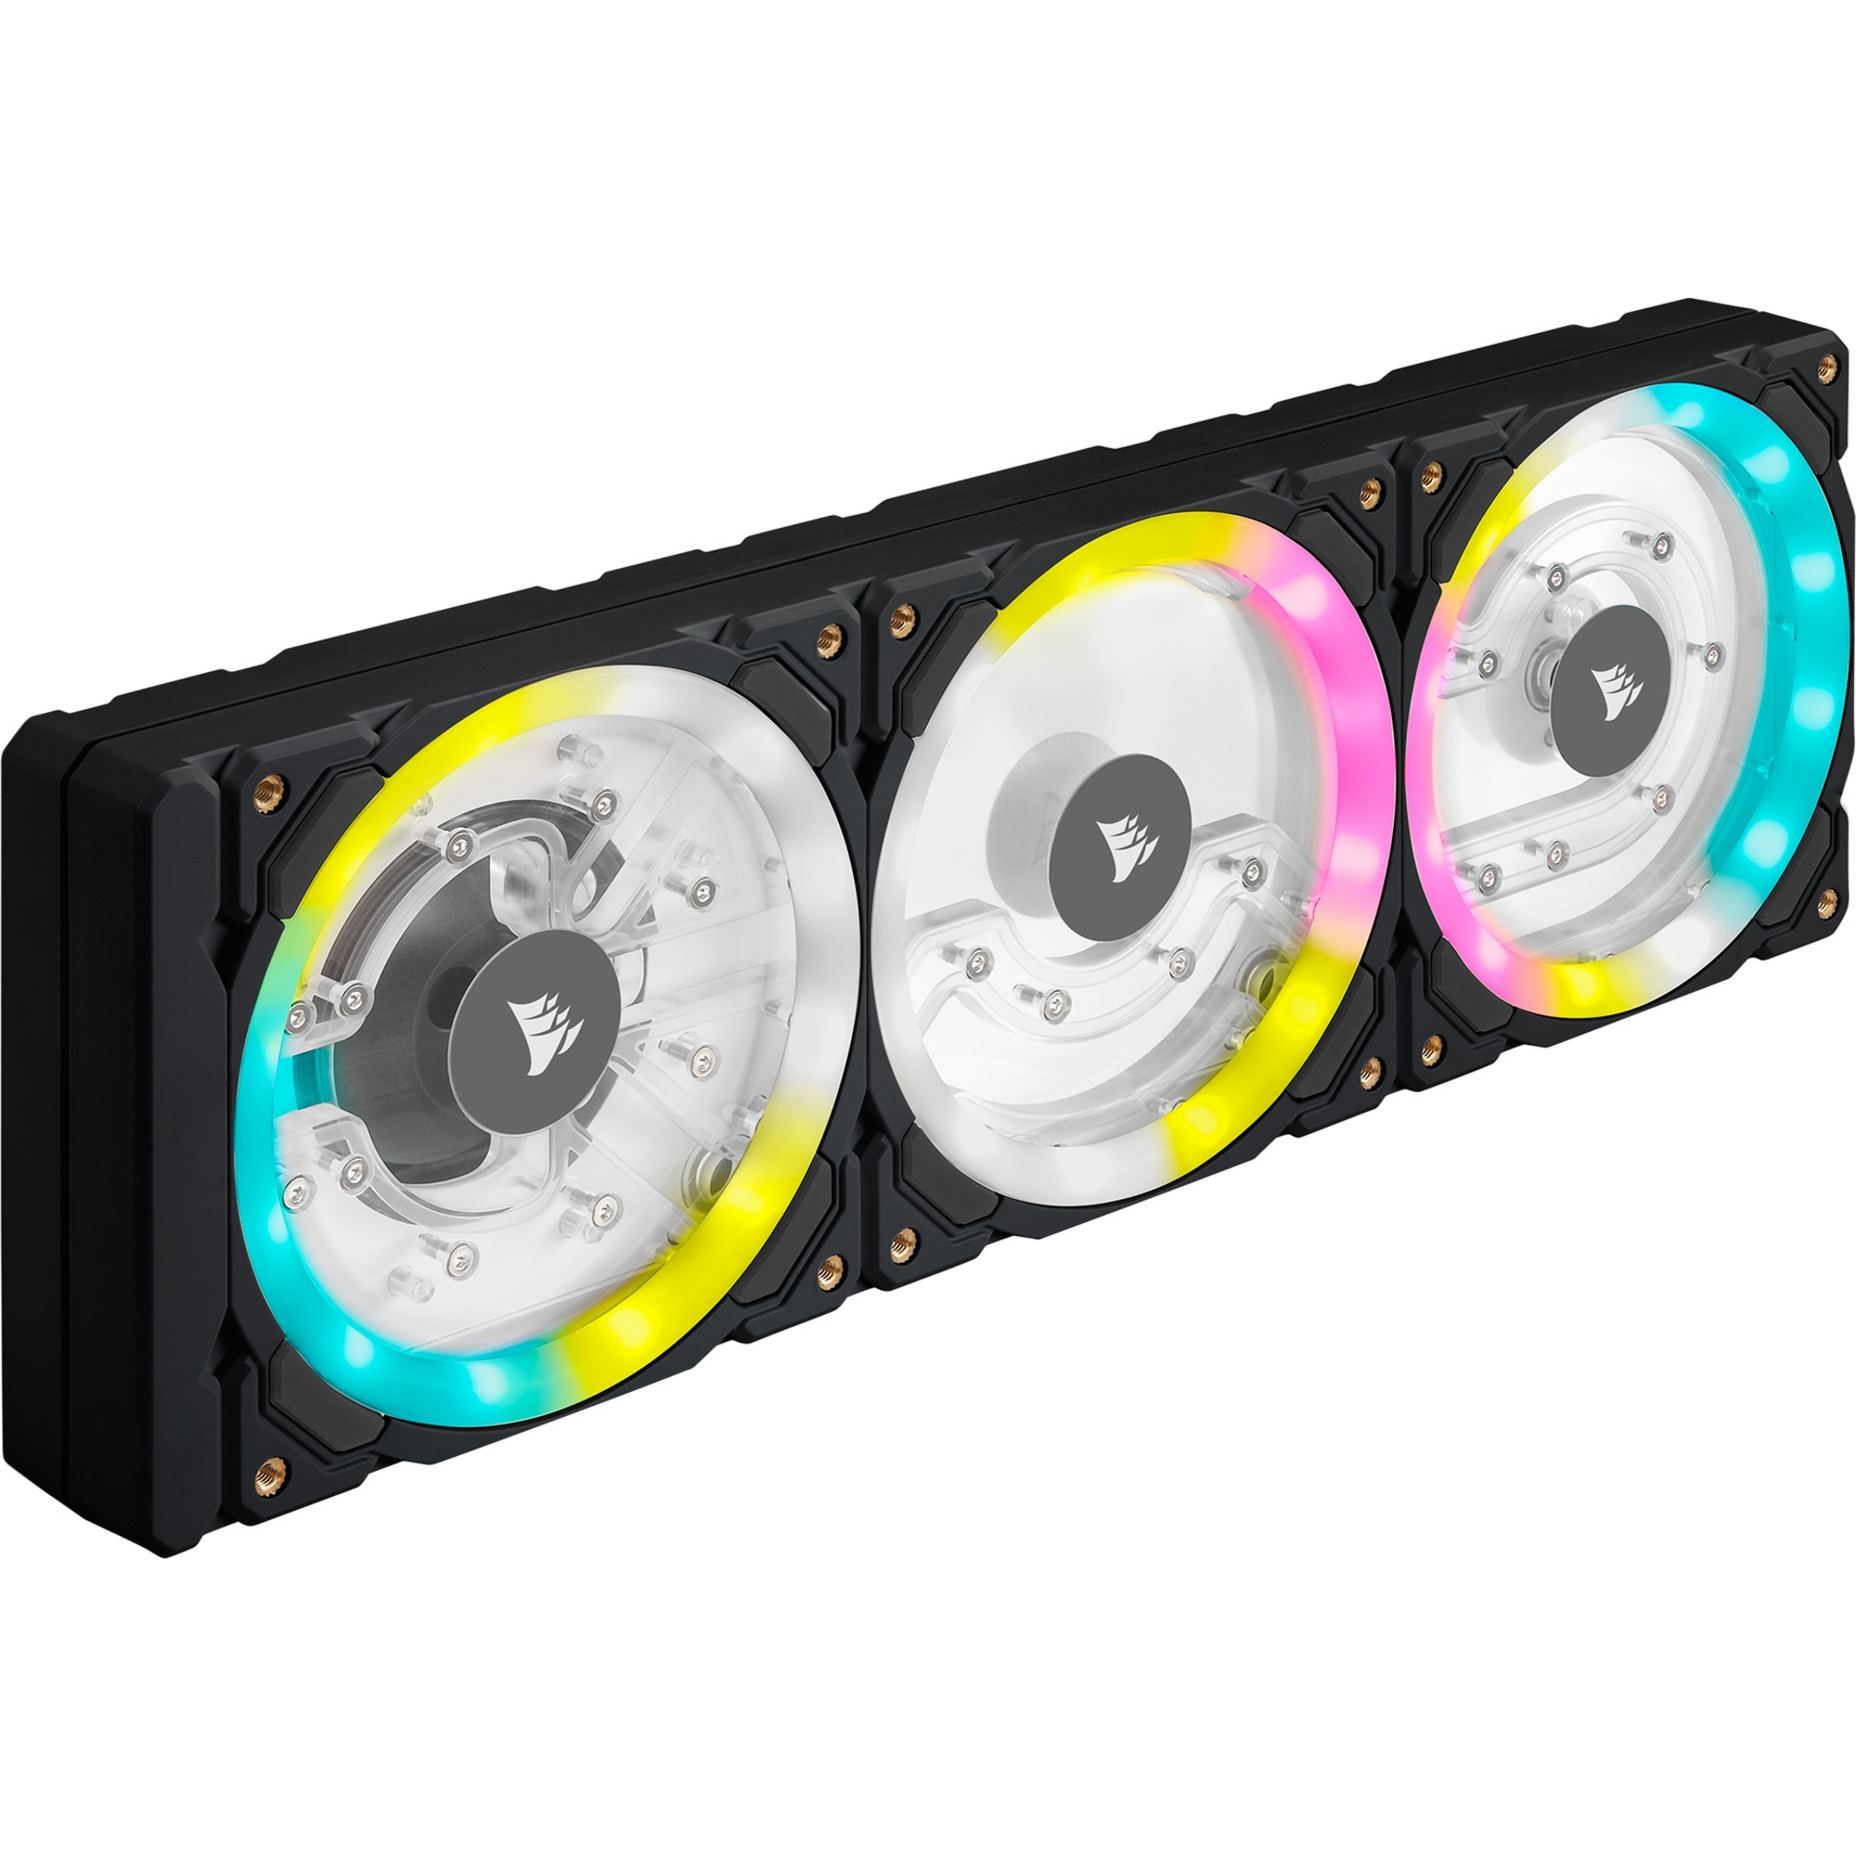 Image of Alternate - Hydro X Series XD7 RGB, Pumpe online einkaufen bei Alternate